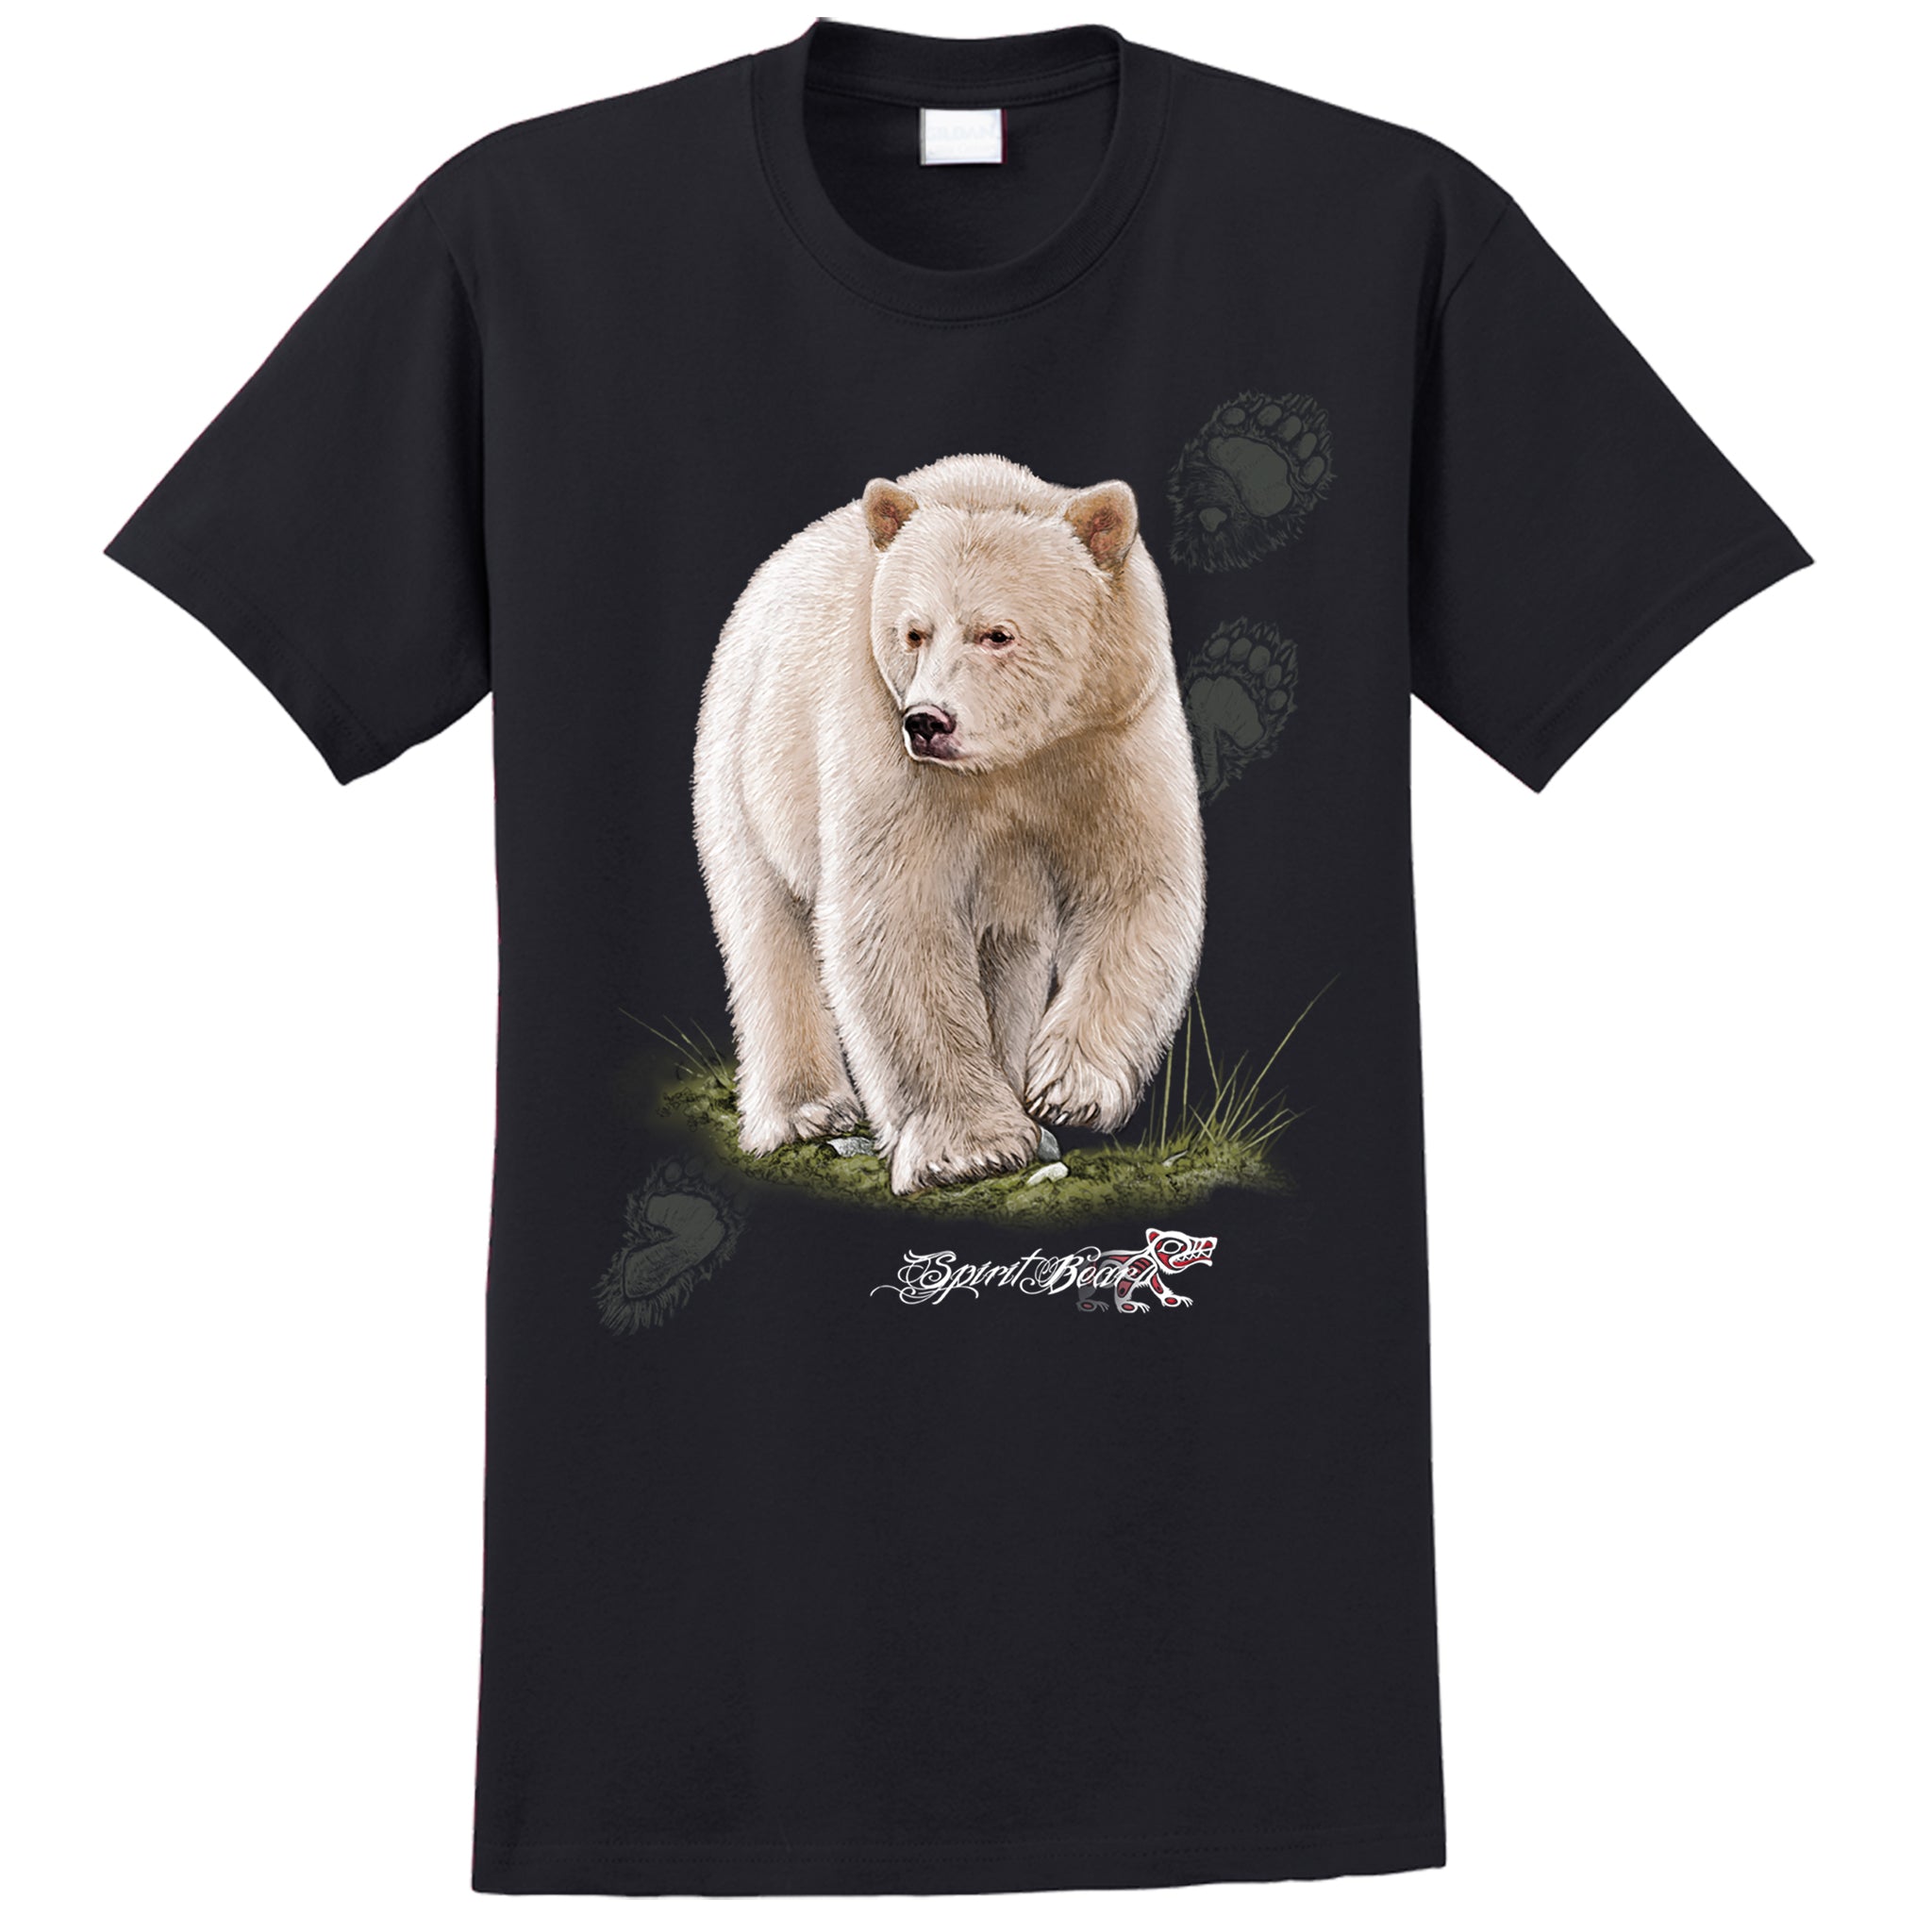 Spirit Bear T-shirt - black T-shirt with spirit bear art by artist Eric Blais